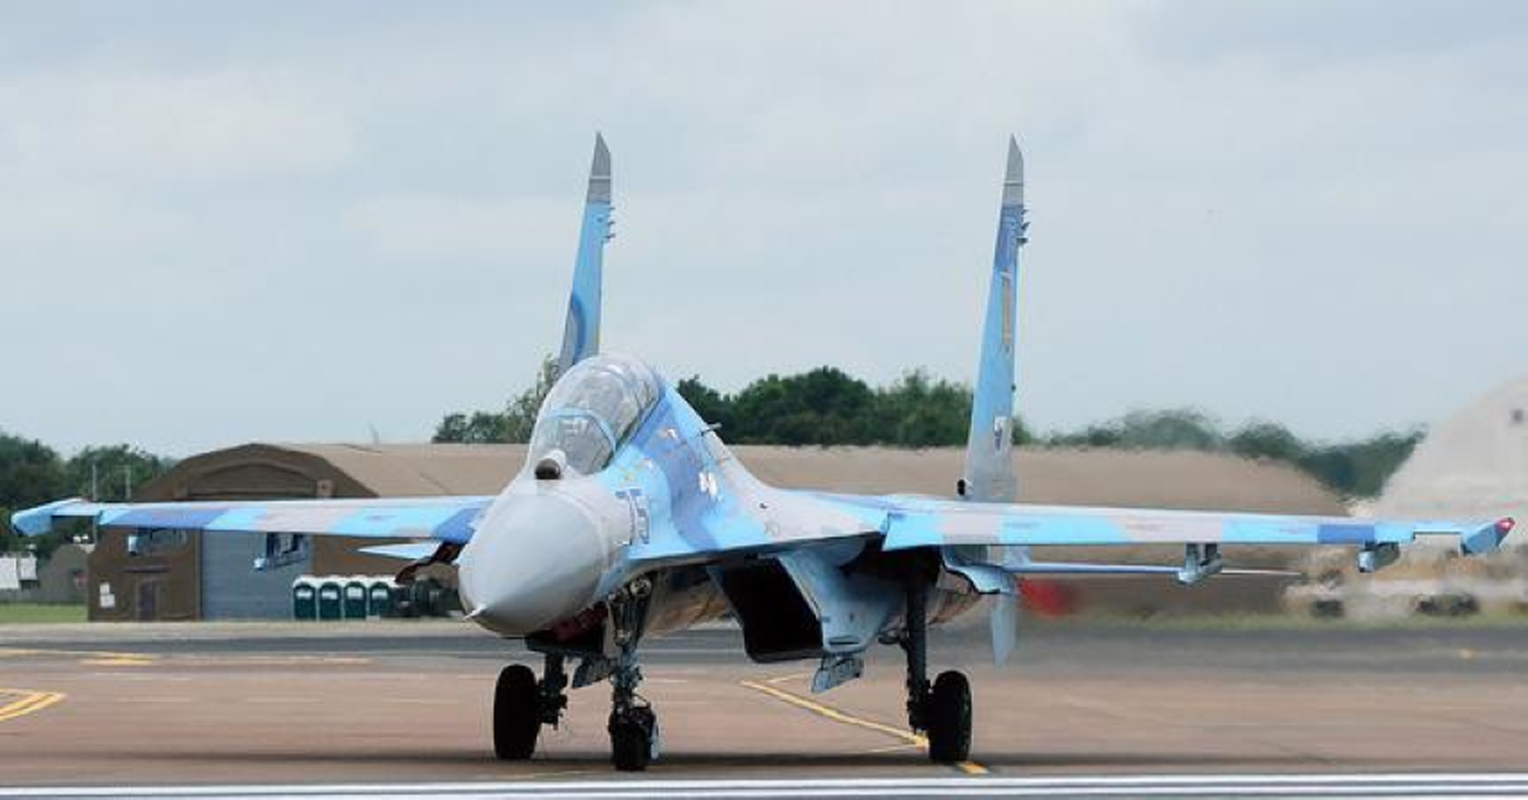 Chien dau co Su-27 cua Ukraine con bao nhieu chiec co the hoat dong?